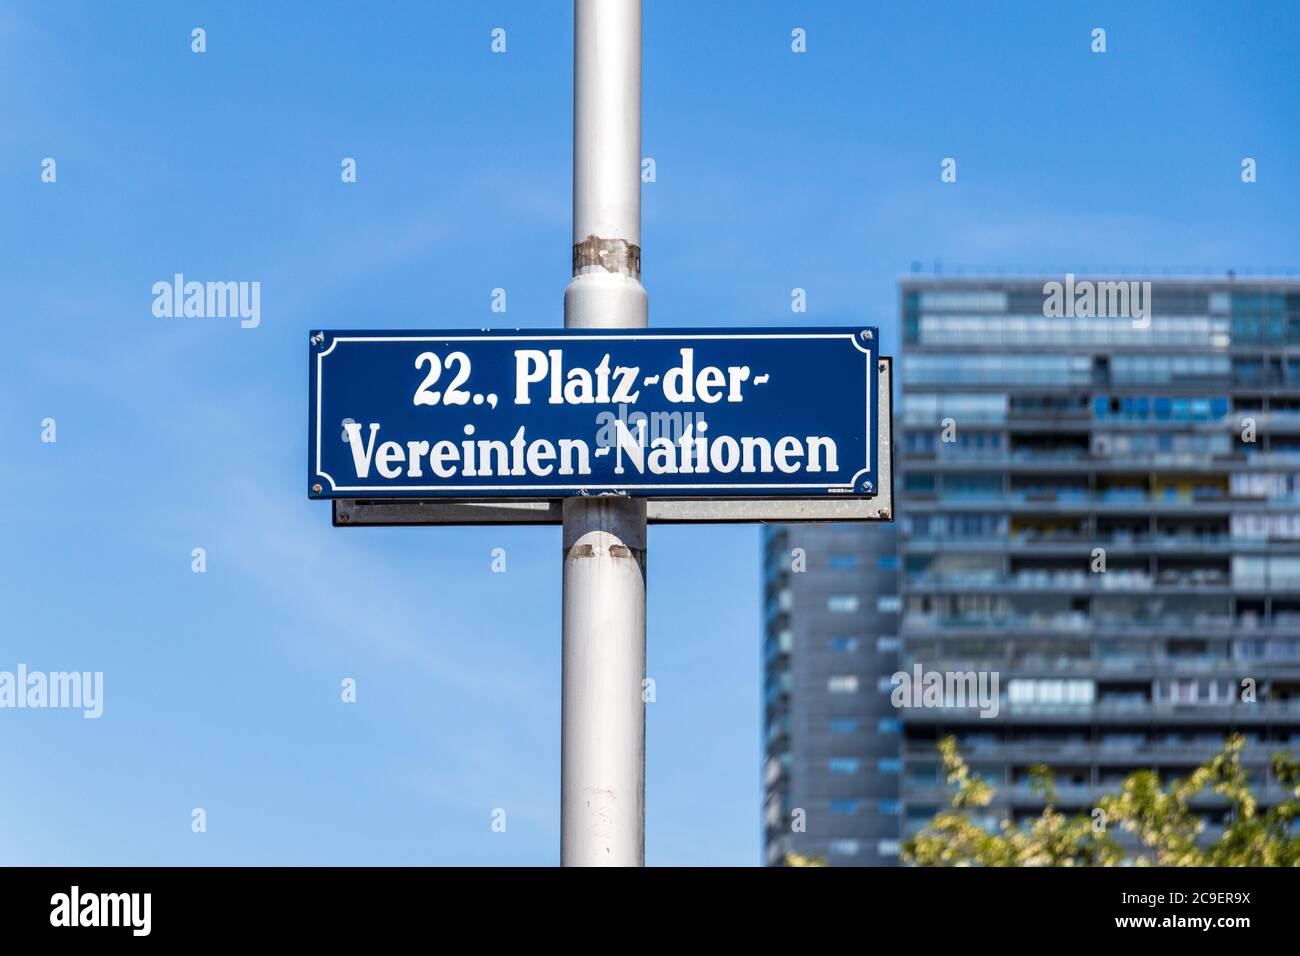 Street Sign of Square of United Nations, ger. Platz-der-Vereinten-Nationen in Danube City, Vienna, Austria, Europe Stock Photo